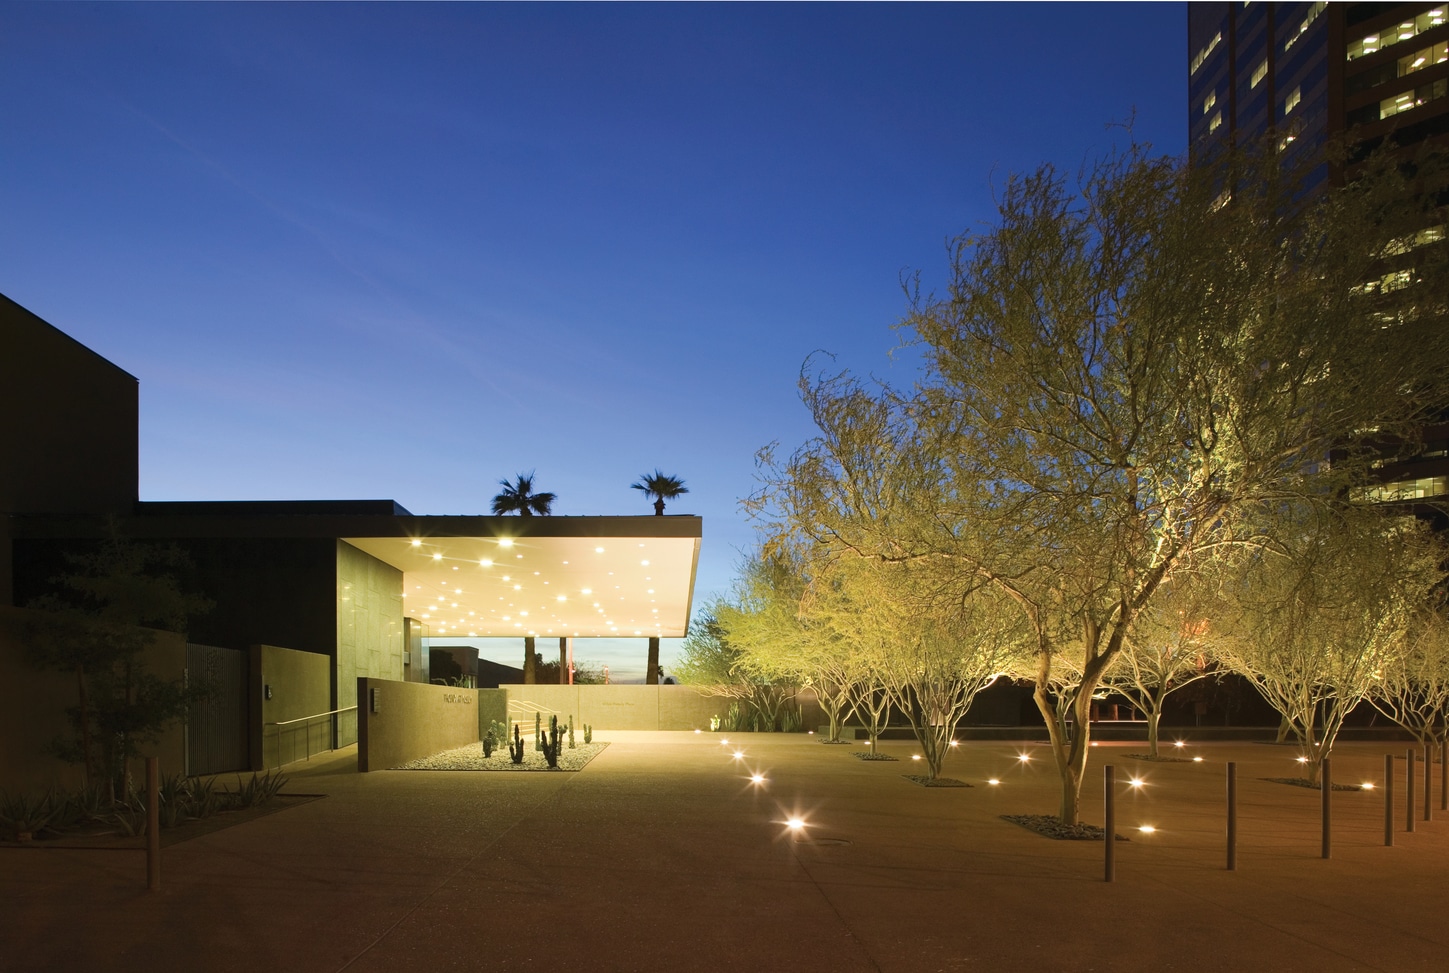 Phoenix Art Museum at night Credit Bill Timmerman